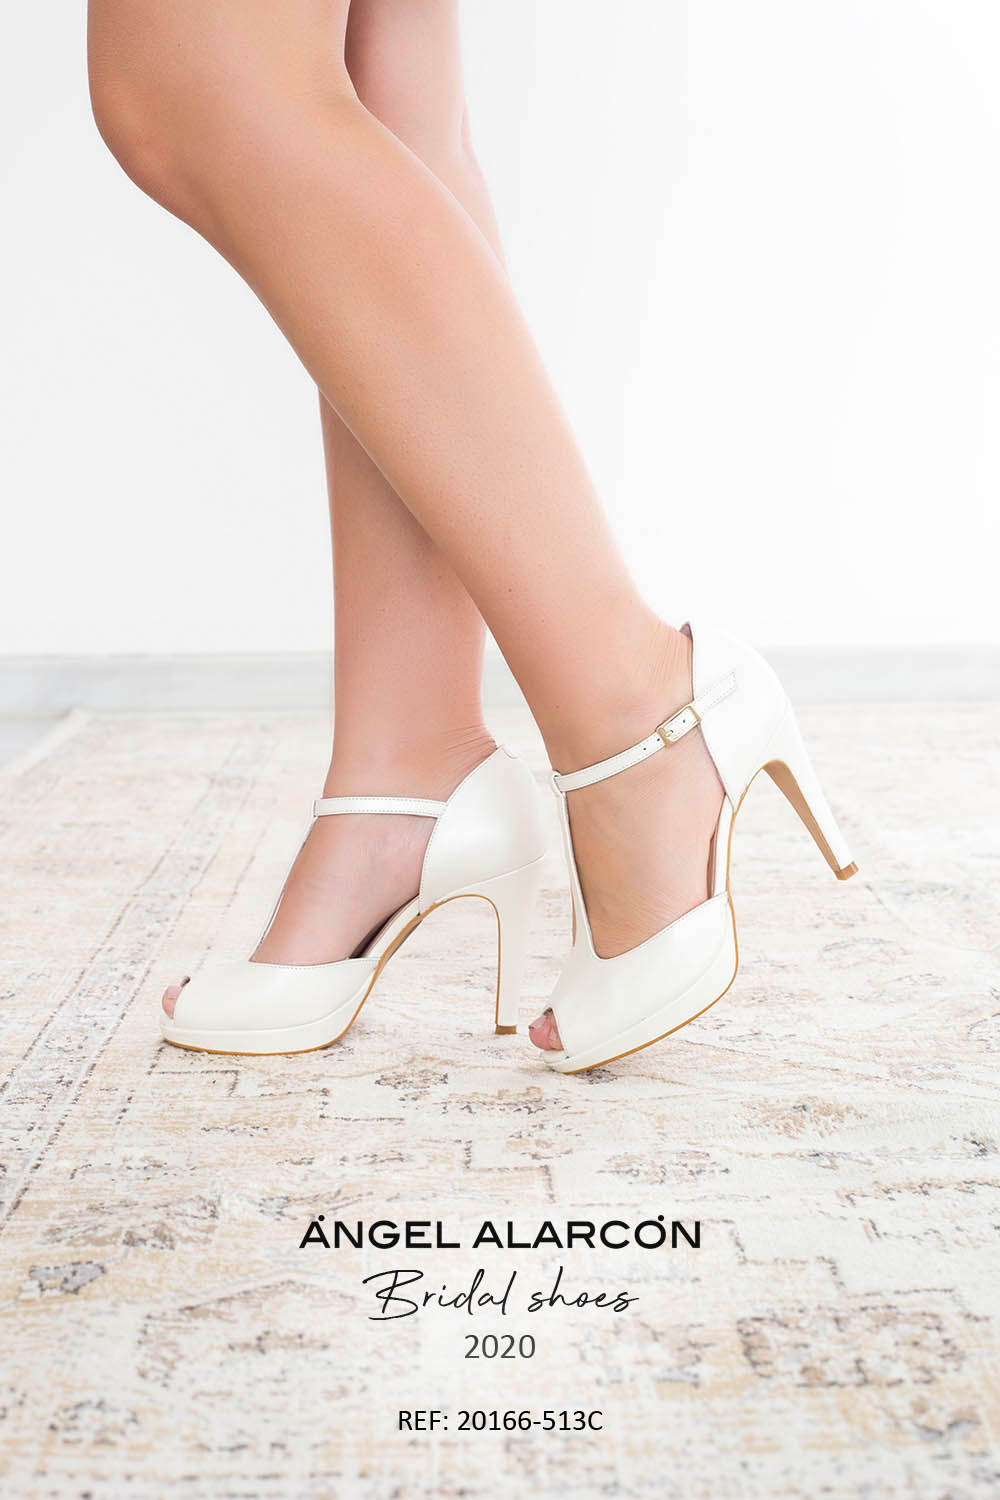 Tradiciones de las bodas. Especial zapatos de novia - Ángel Alarcón